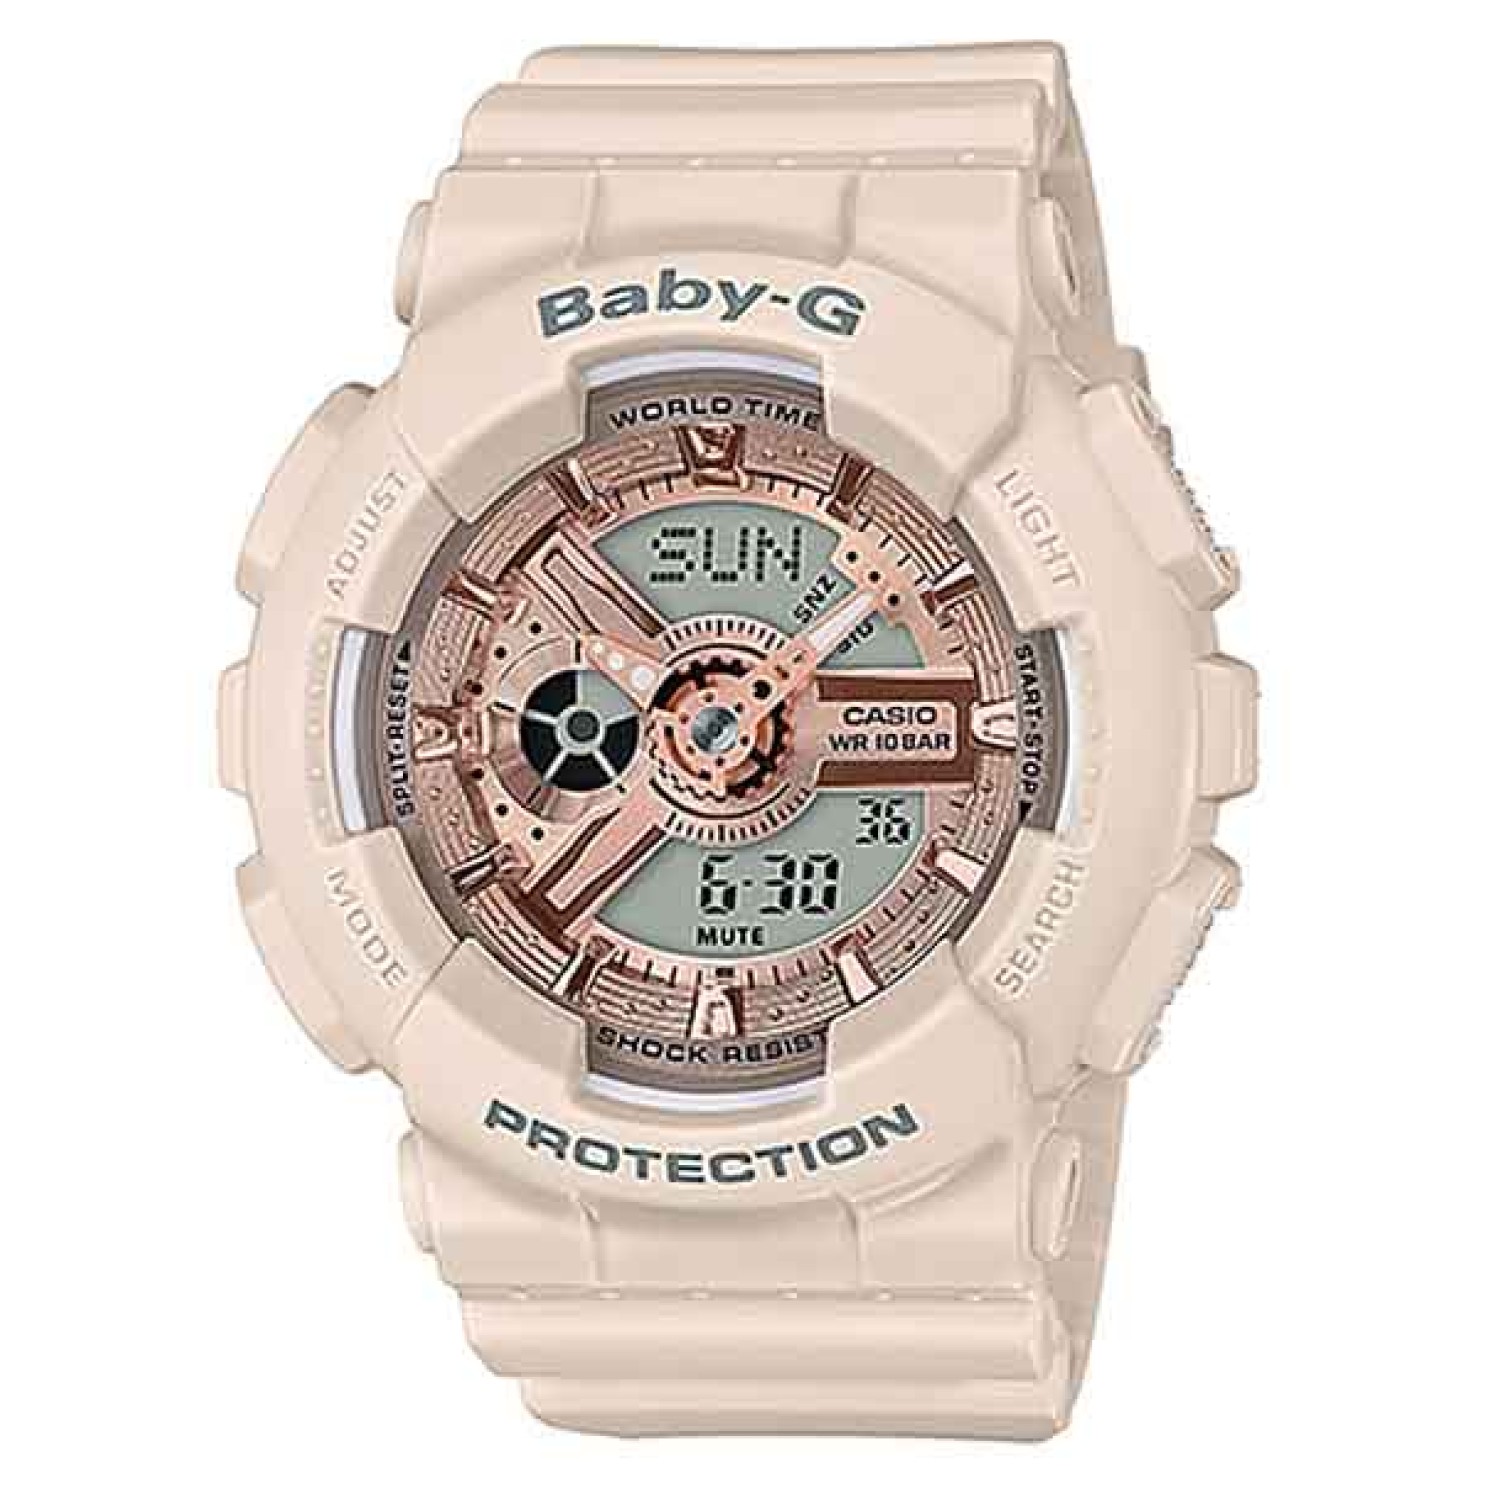 BA110CP-4A Casio BabY-G Pink Beige Series Watch.casio watches nz sale $279.00